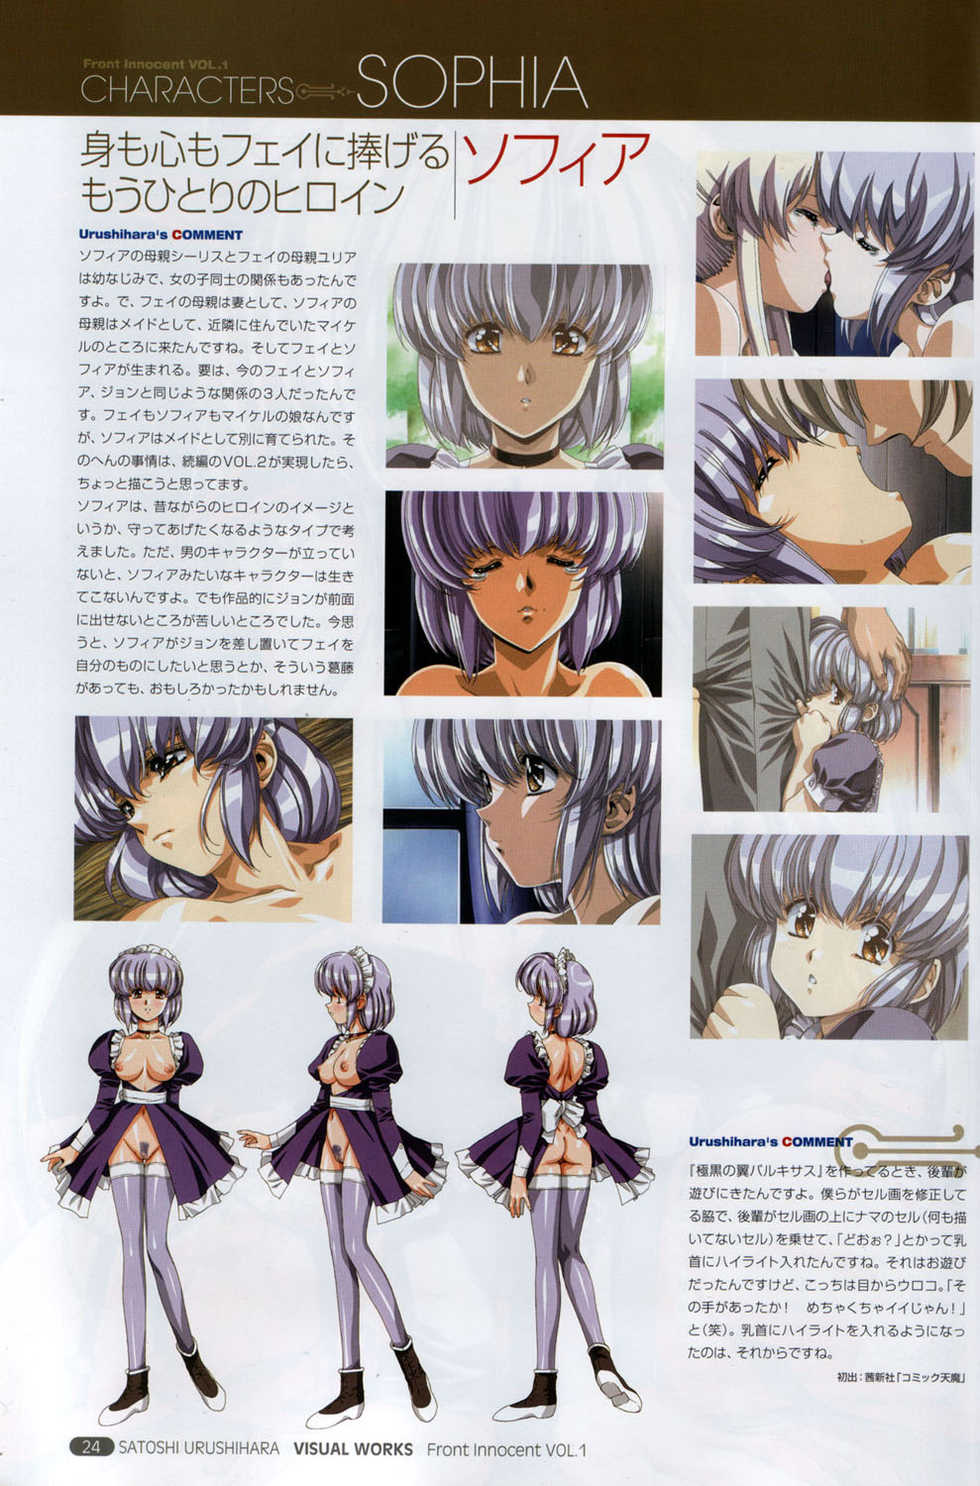 [Satoshi Urushihara] Front Innocent #1: Satoshi Urushihara Visual Works - Page 26